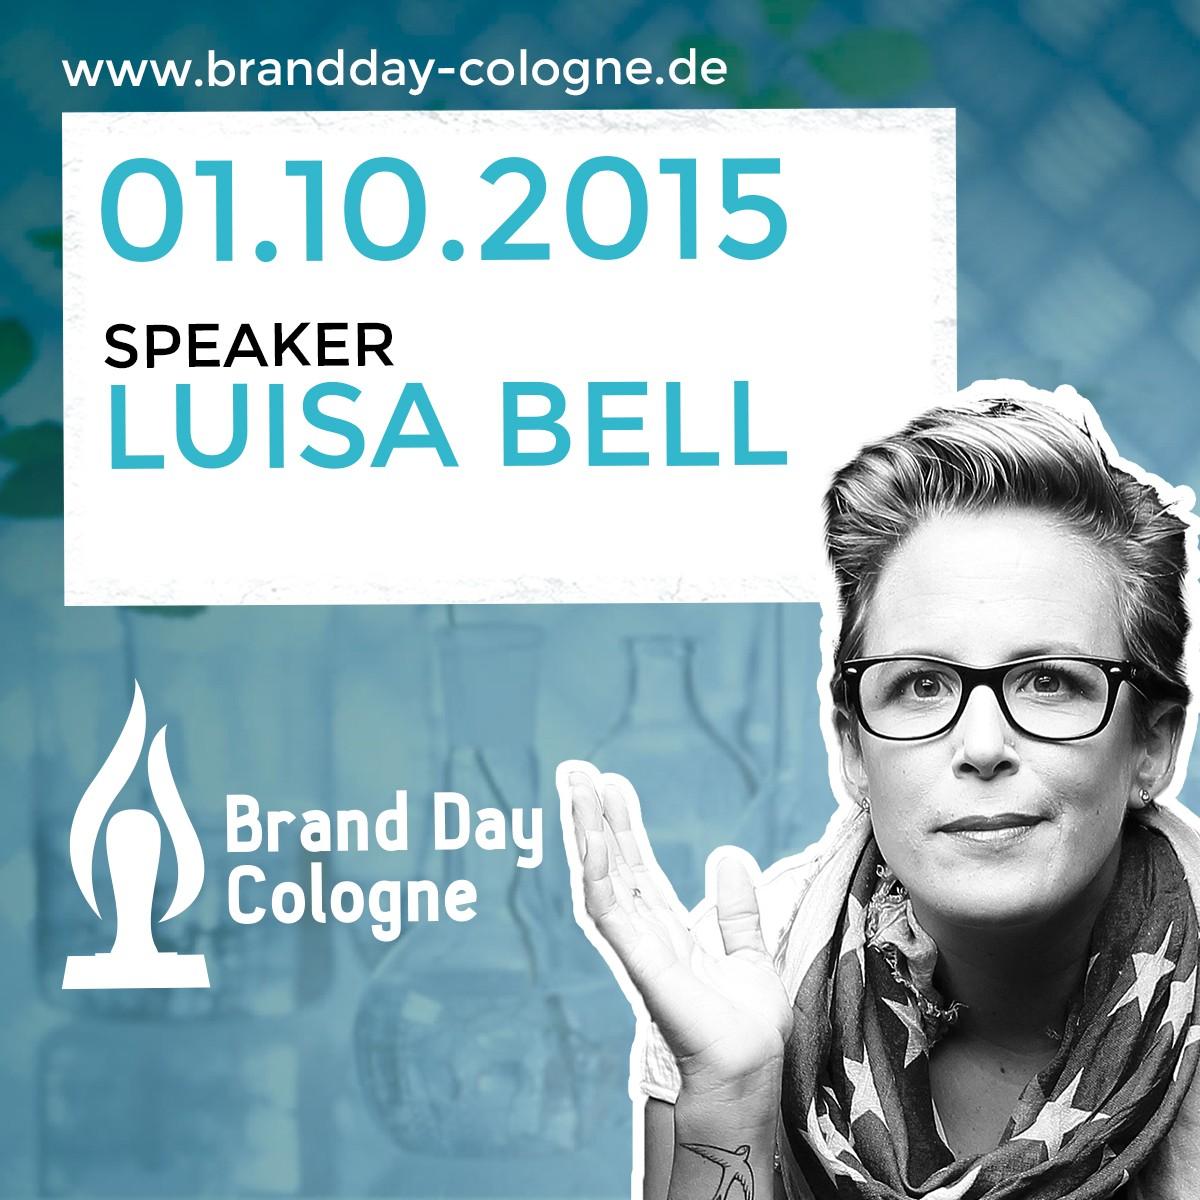 Die Experten des Brand Day Cologne erhalten dank Bell & Co. Ihre eigenen Videoteaser